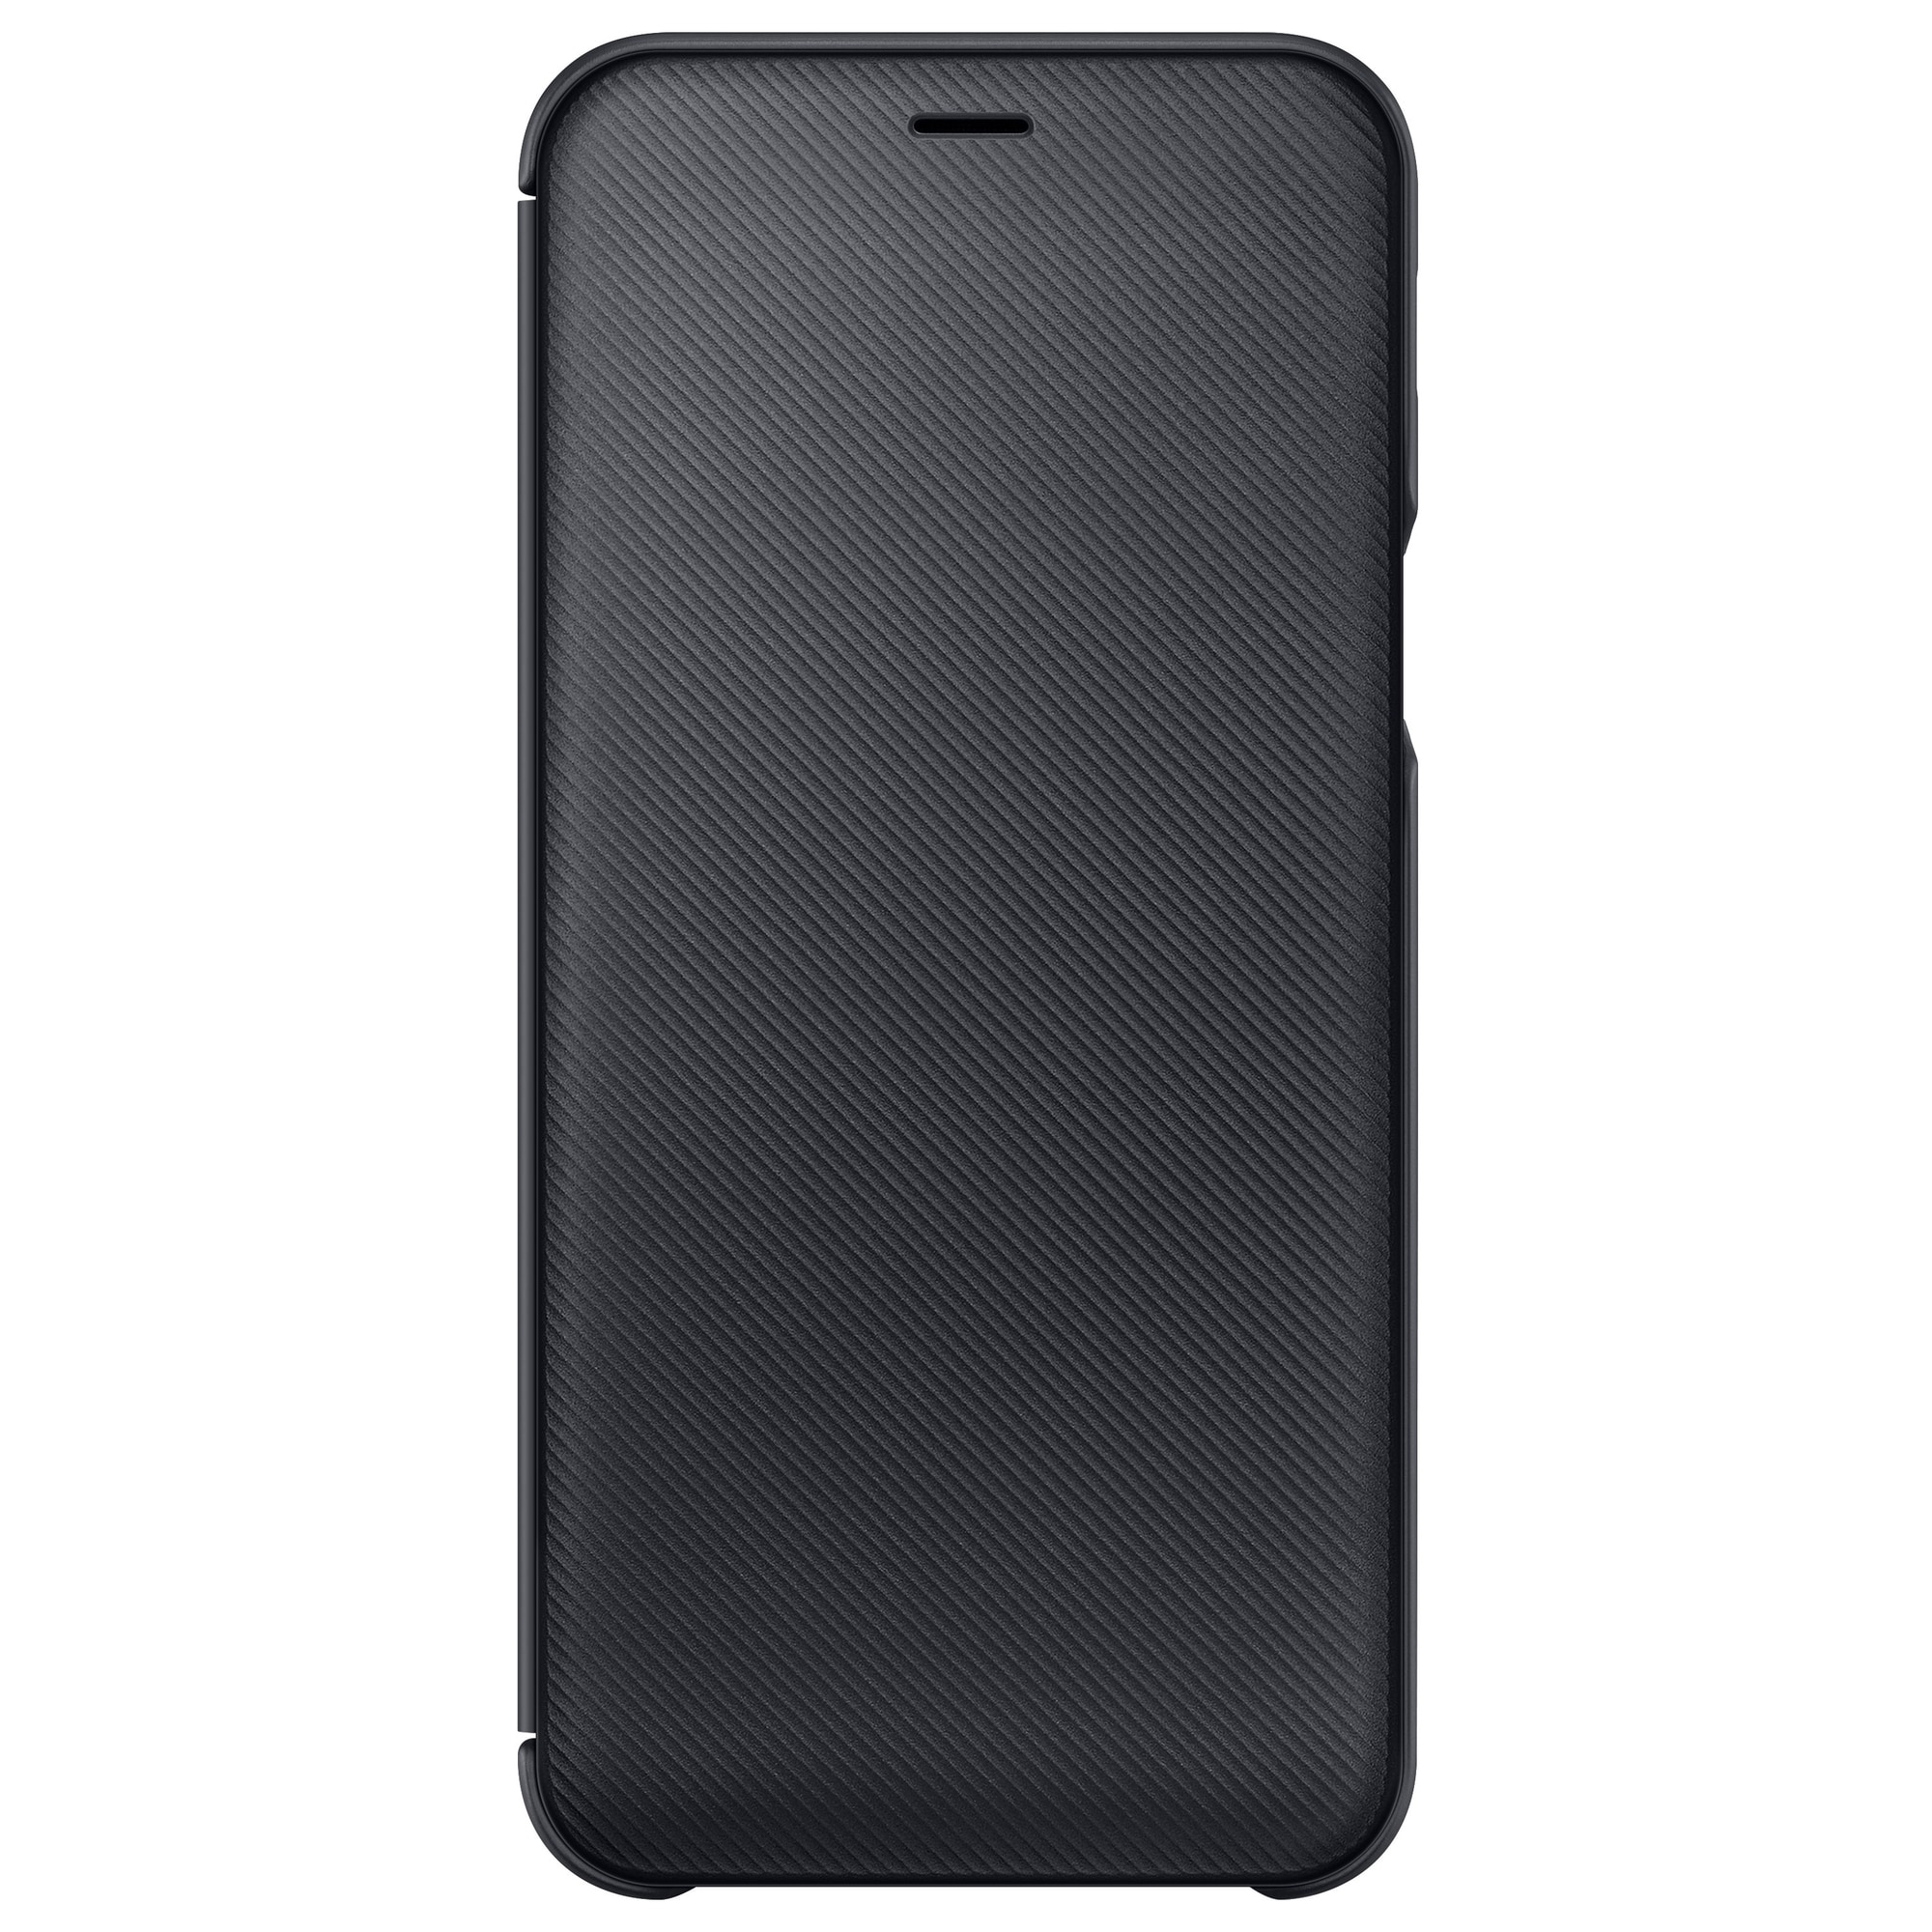 Samsung Galaxy A6 lommebokdeksel (sort) - Deksler og etui til mobiltelefon  - Elkjøp